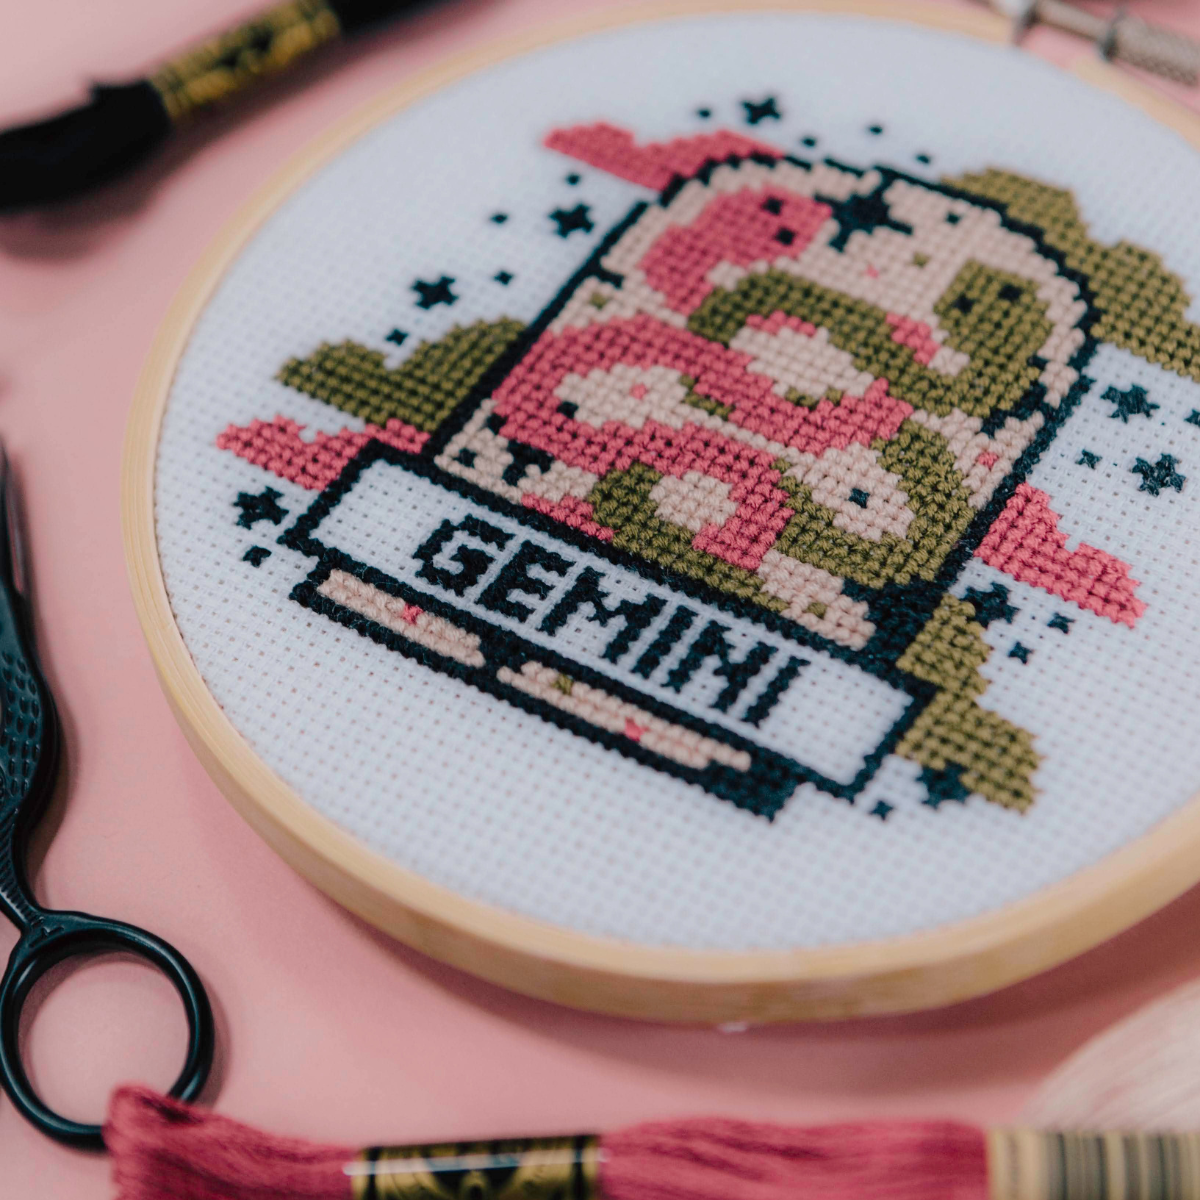 'Gemini' Zodiac Star Sign Cross Stitch Kit